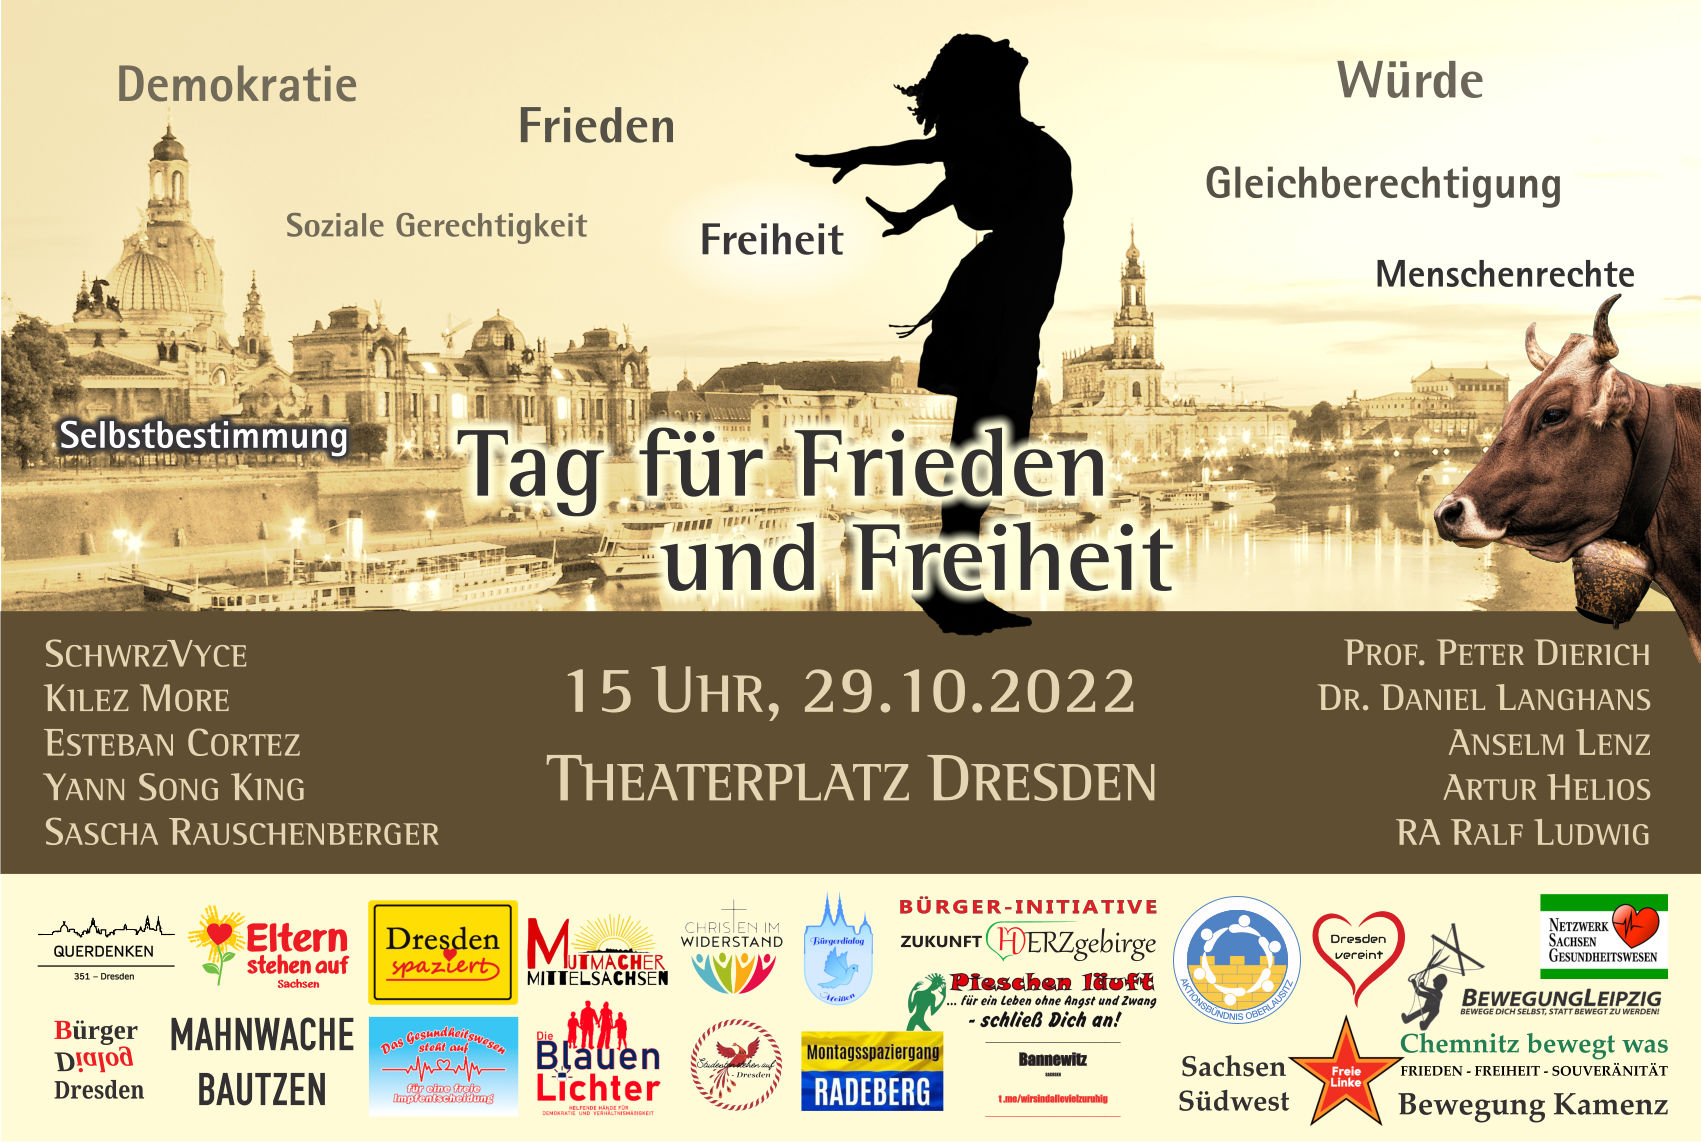 Tag für Frieden und Freiheit am 29.10.2022 in Dresden